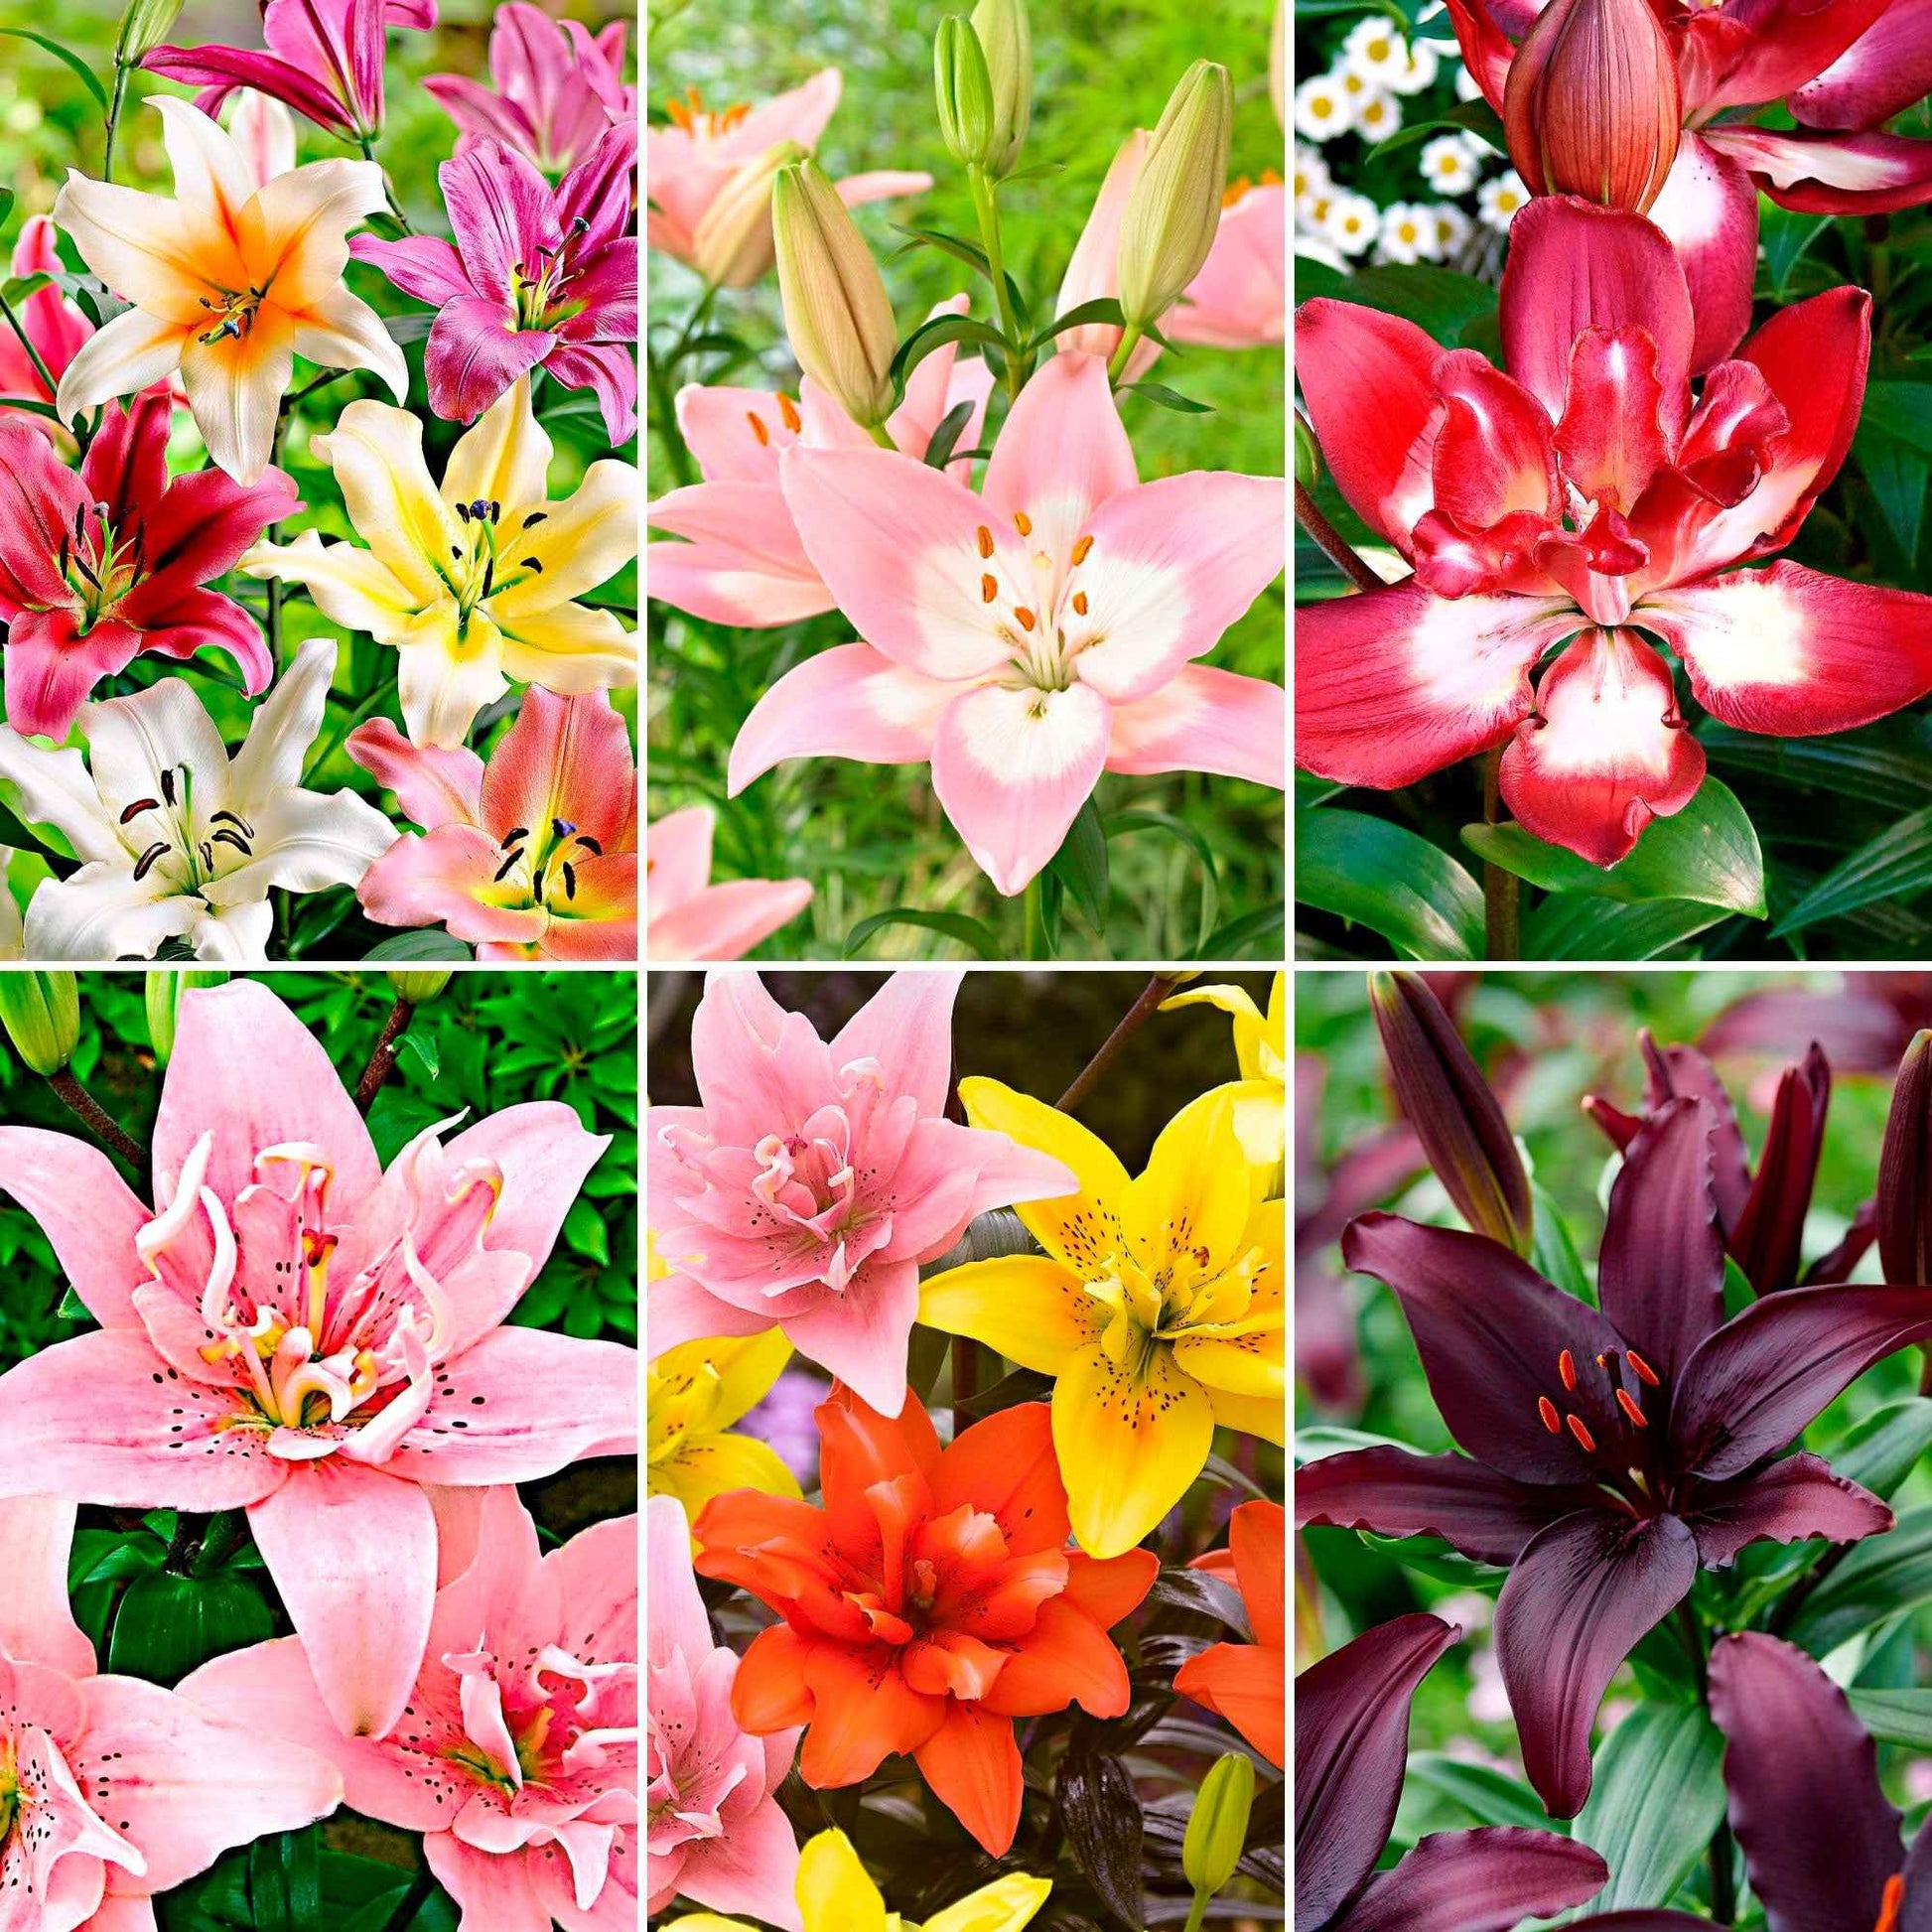 100+ Lys Lilium 'Asian Lilies' Mélange de couleurs - Bulbes de fleurs populaires